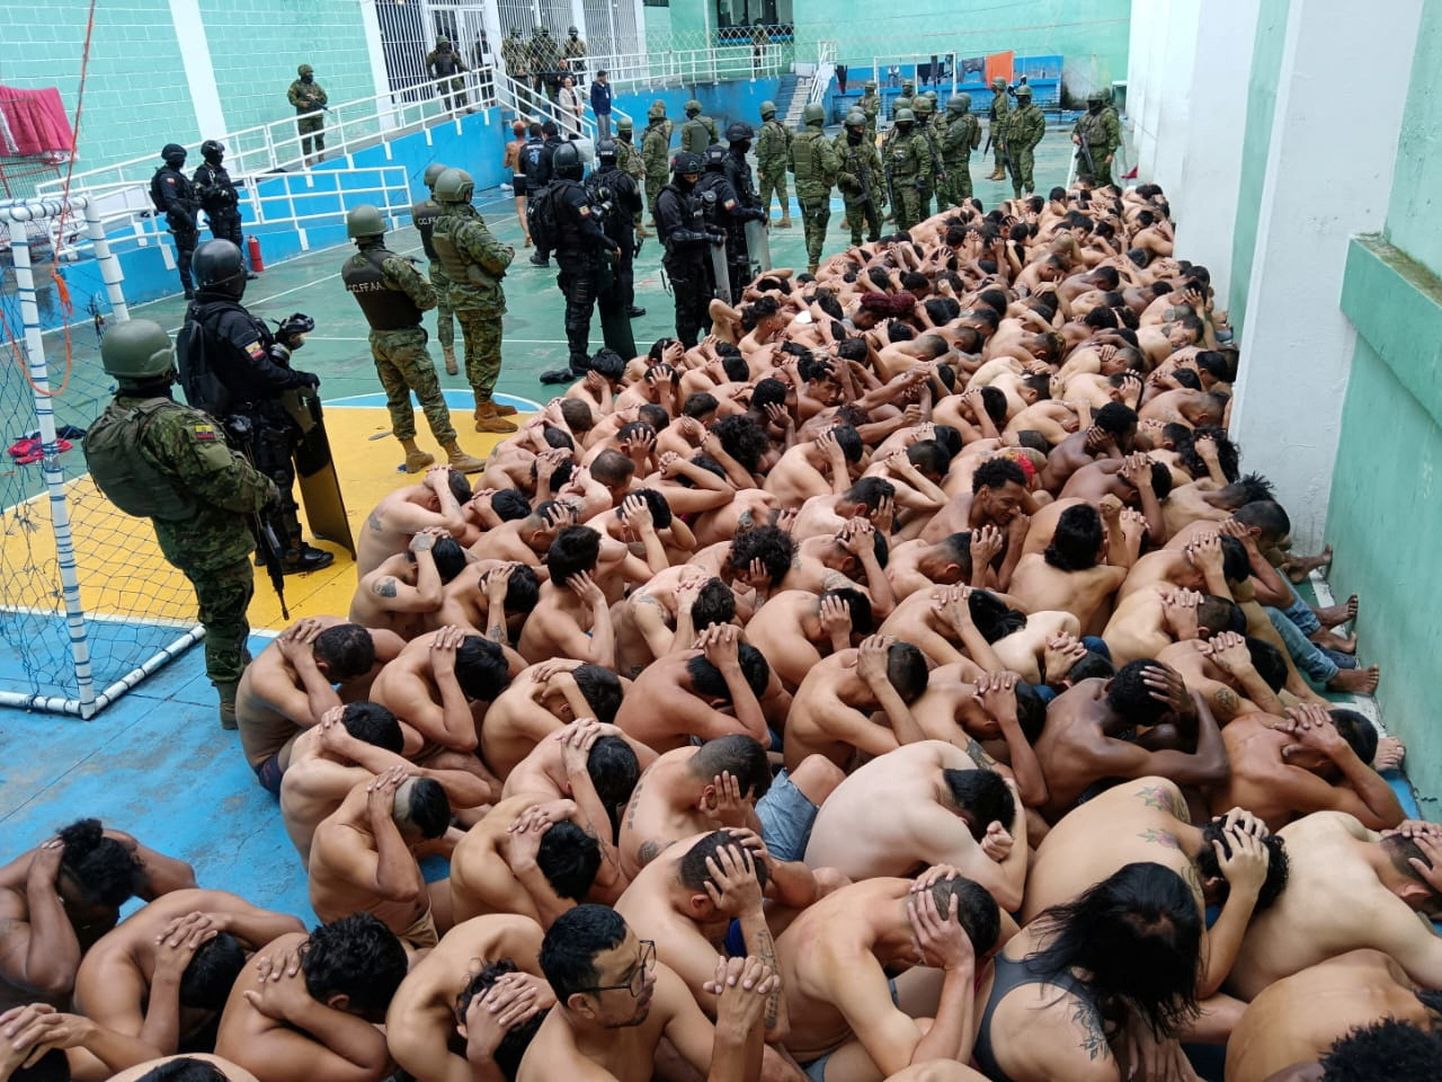 Turi vanglas tehtud politseioperatsiooni käigus üritati leida möödunud nädalatel mässanud narkojõukude liikmeid. Ecuadori vanglates võeti jaanuari alguses kasutusele rangemad meetmed. Sotsiaalmeedias levis antud foto 14. jaanuaril.